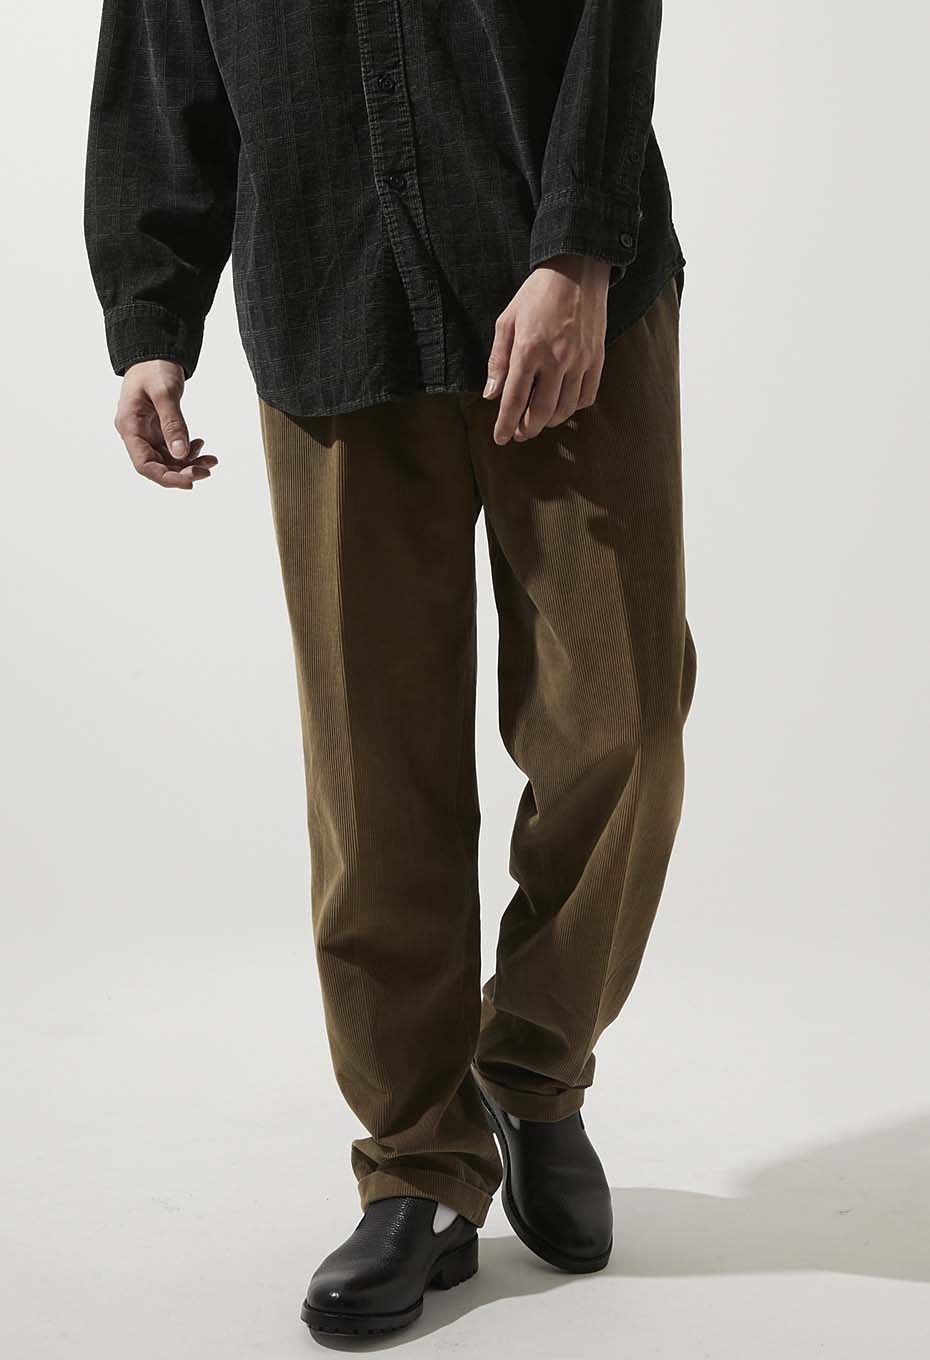 はこぽす対応商品】 パンツ vintage corduroy bootcut slacks パンツ 